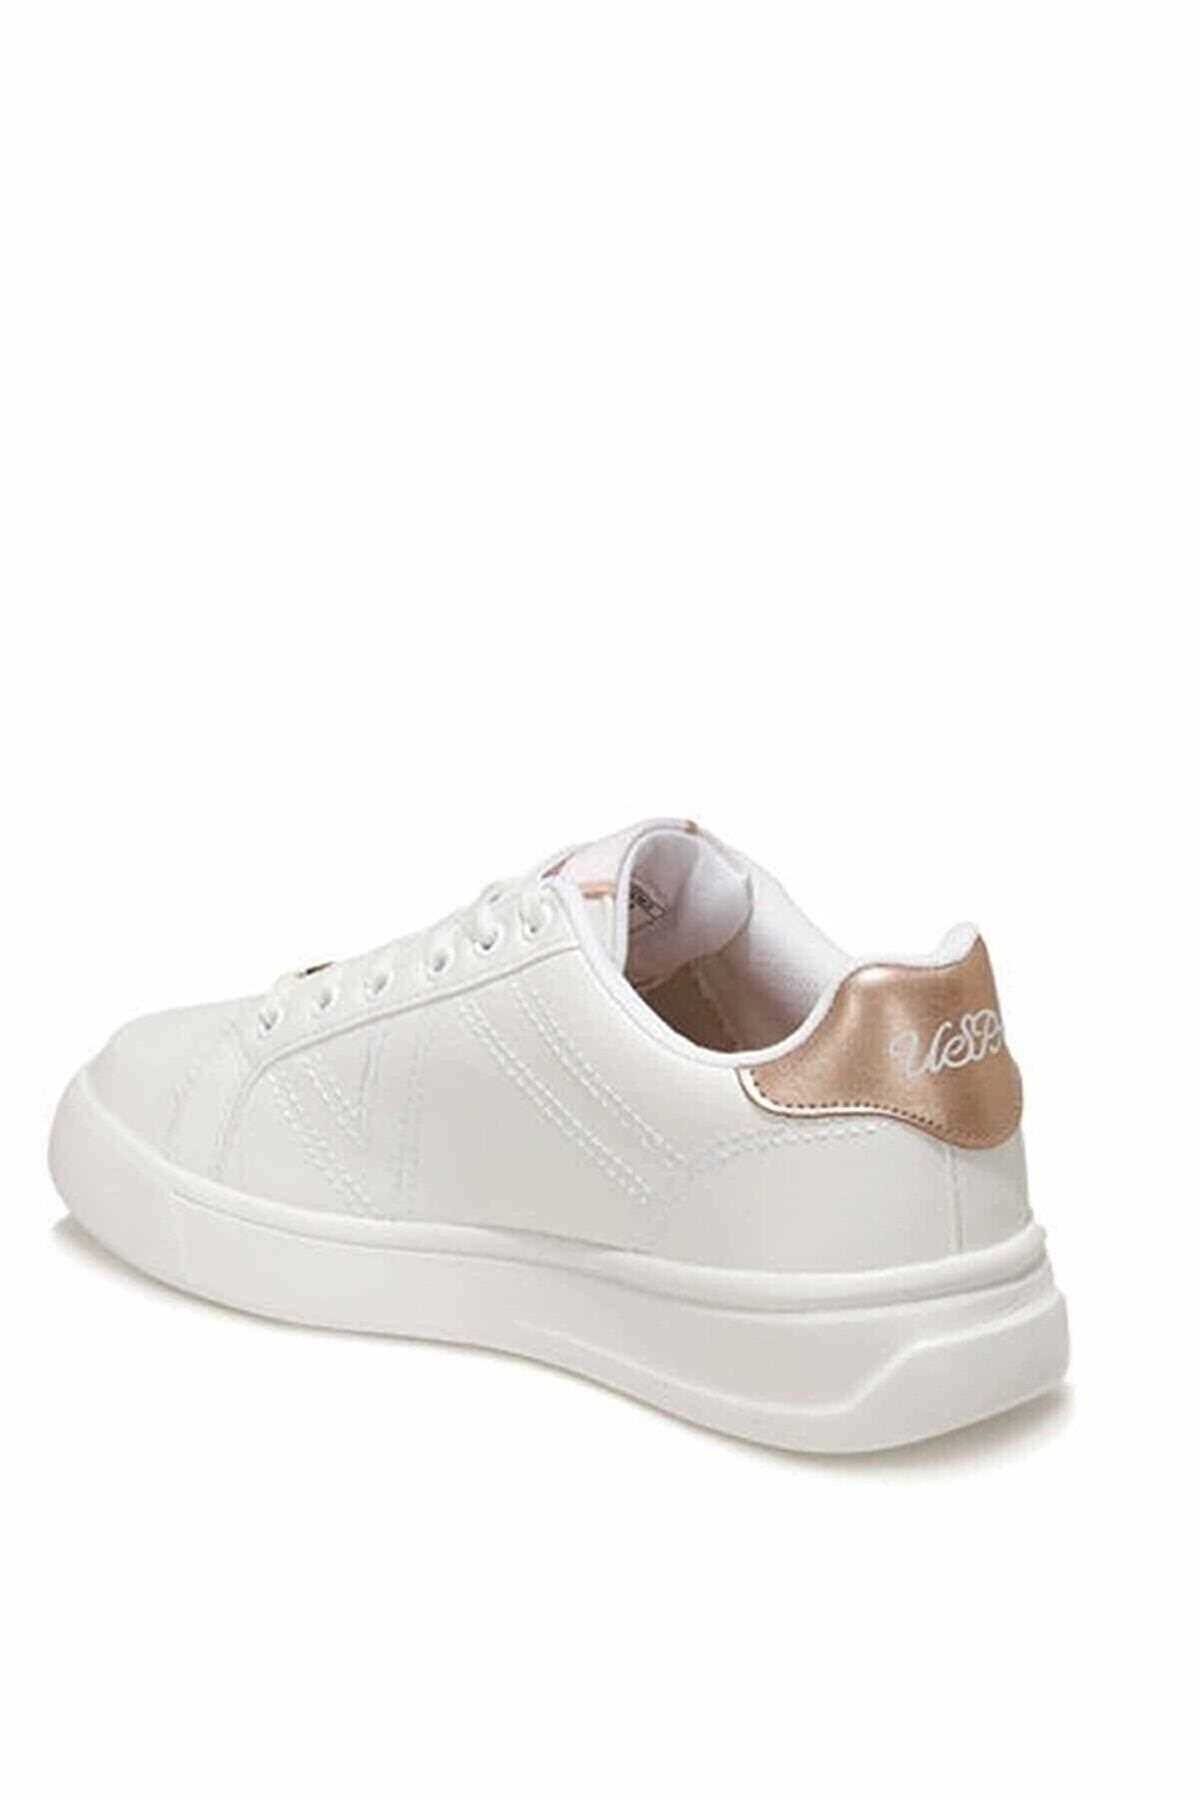 خرید نقدی کفش مخصوص پیاده روی زنانه برند US Polo Assn رنگ سفید ty339700989